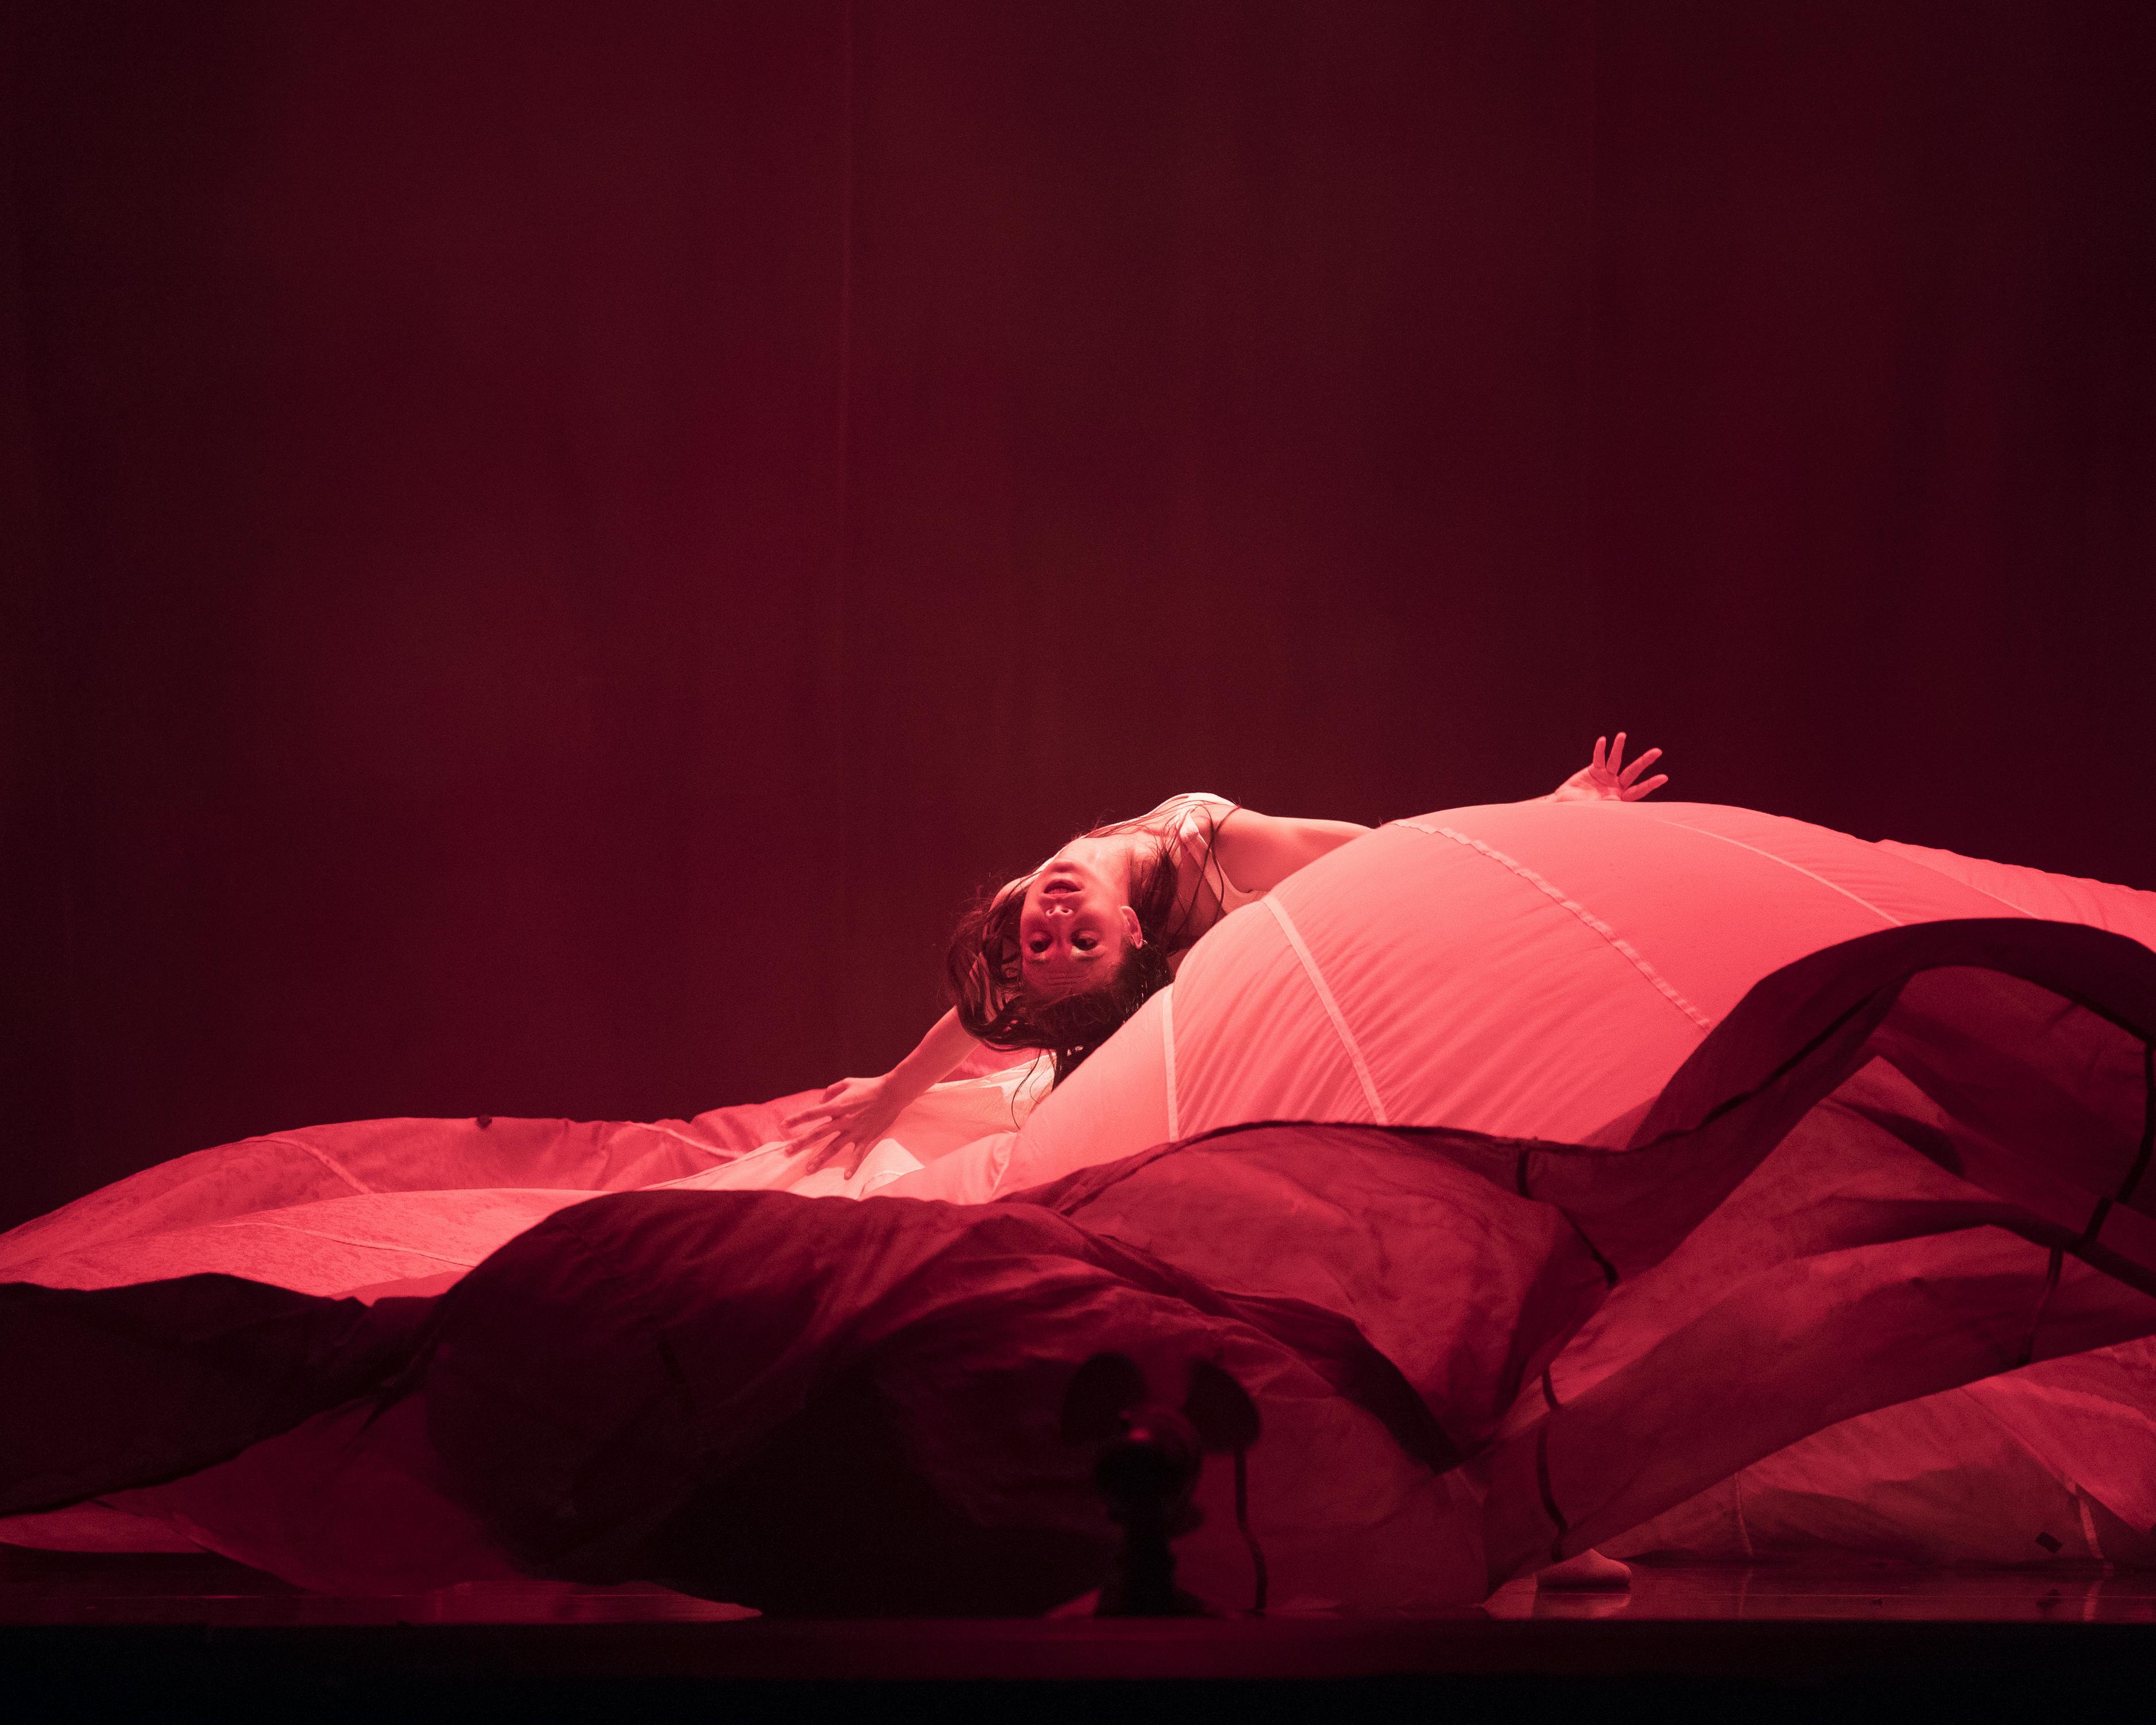 Una danzatrice si esibisce in uno sul palco avvolta in telo rosso scuro